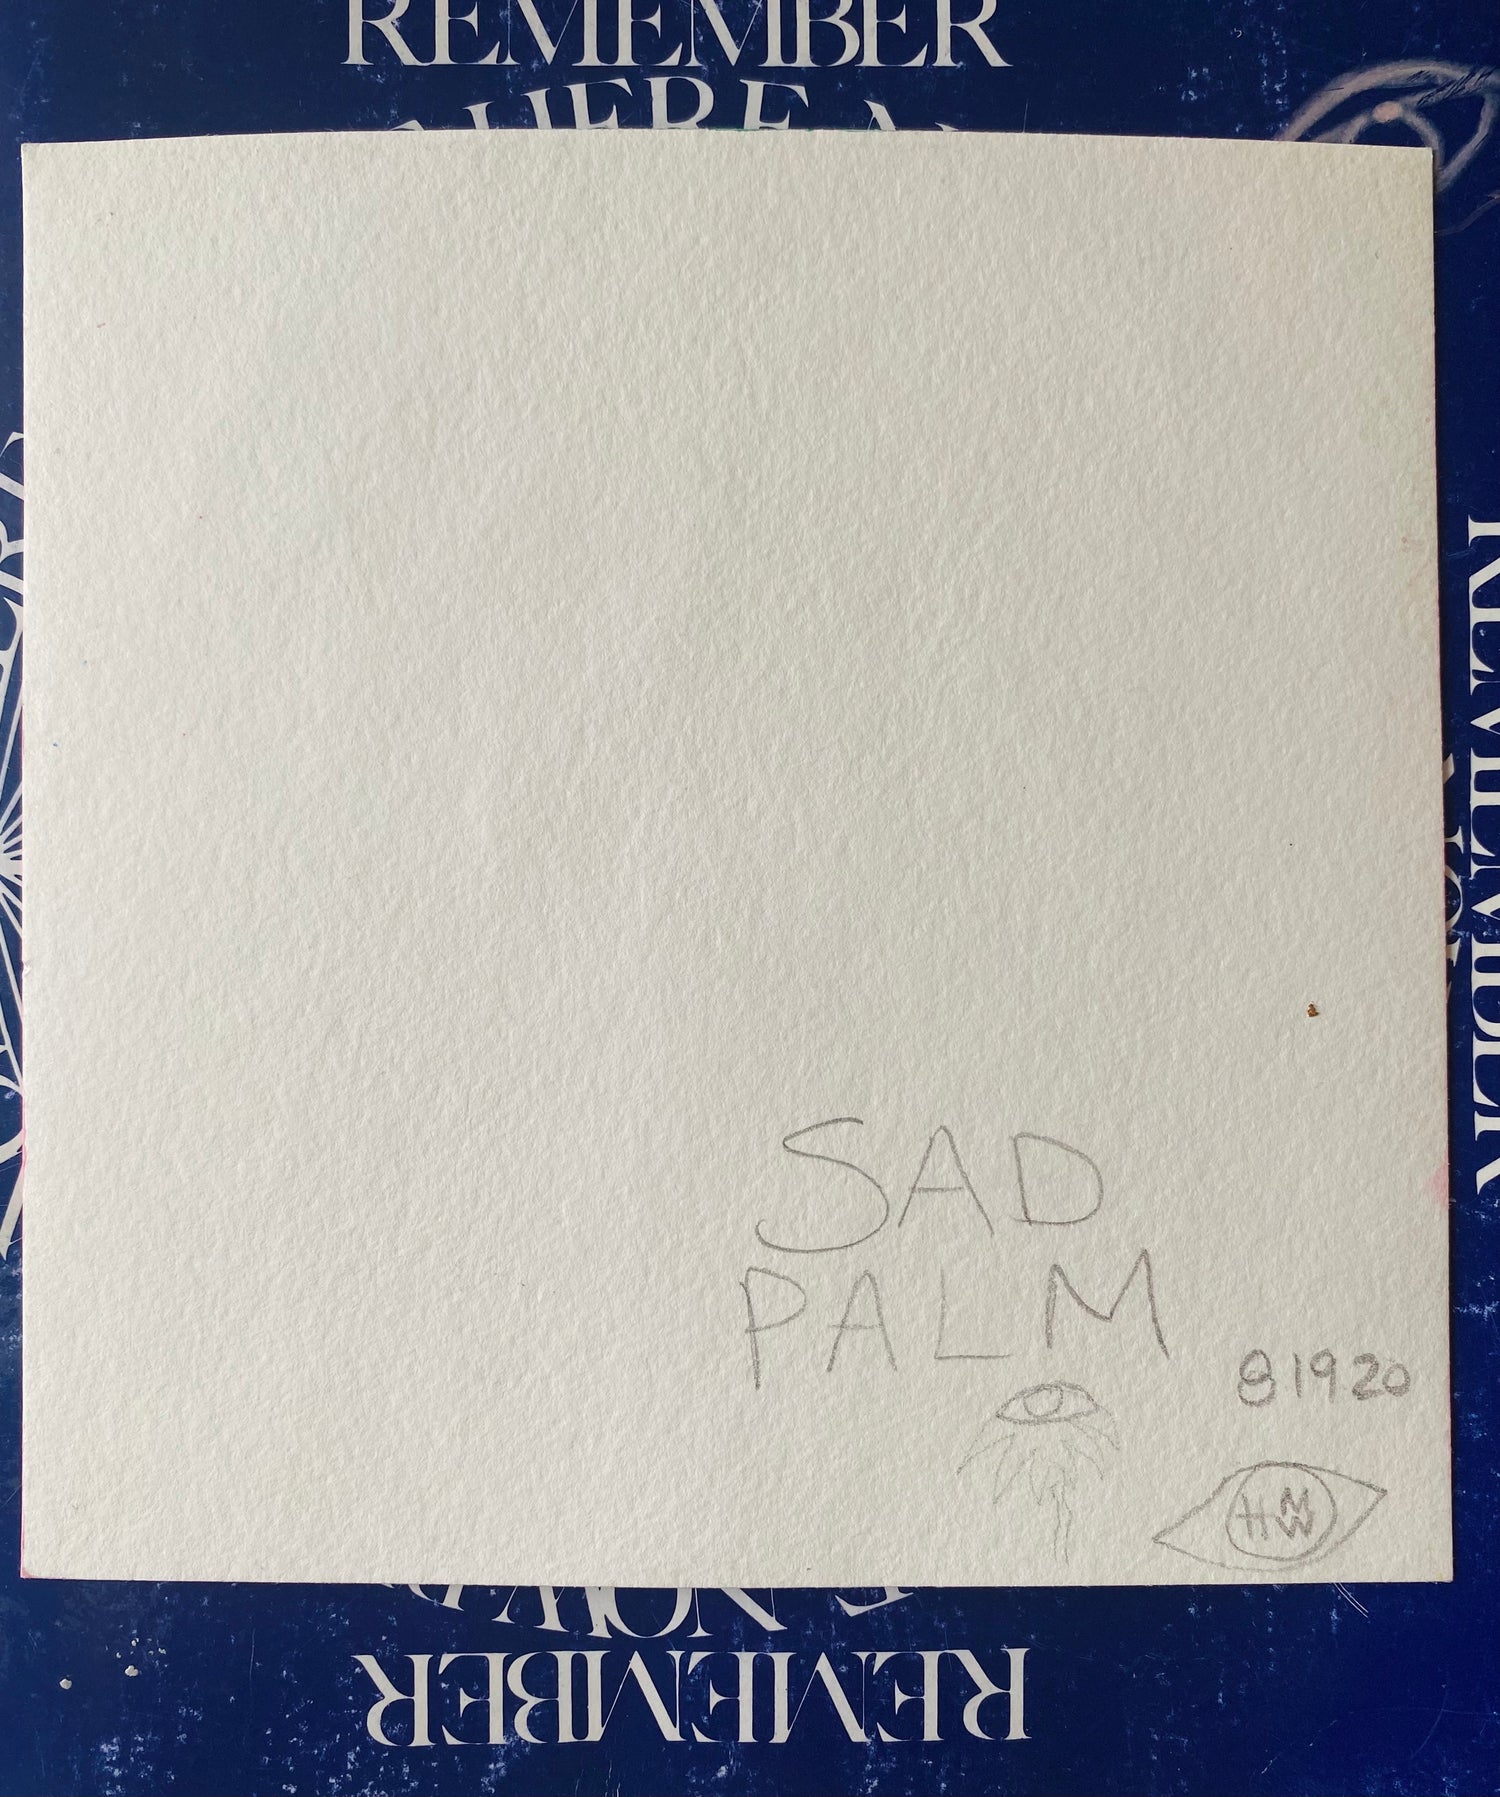 SAD PALM - Original 6x6 - Moon Room Shop and Wellness